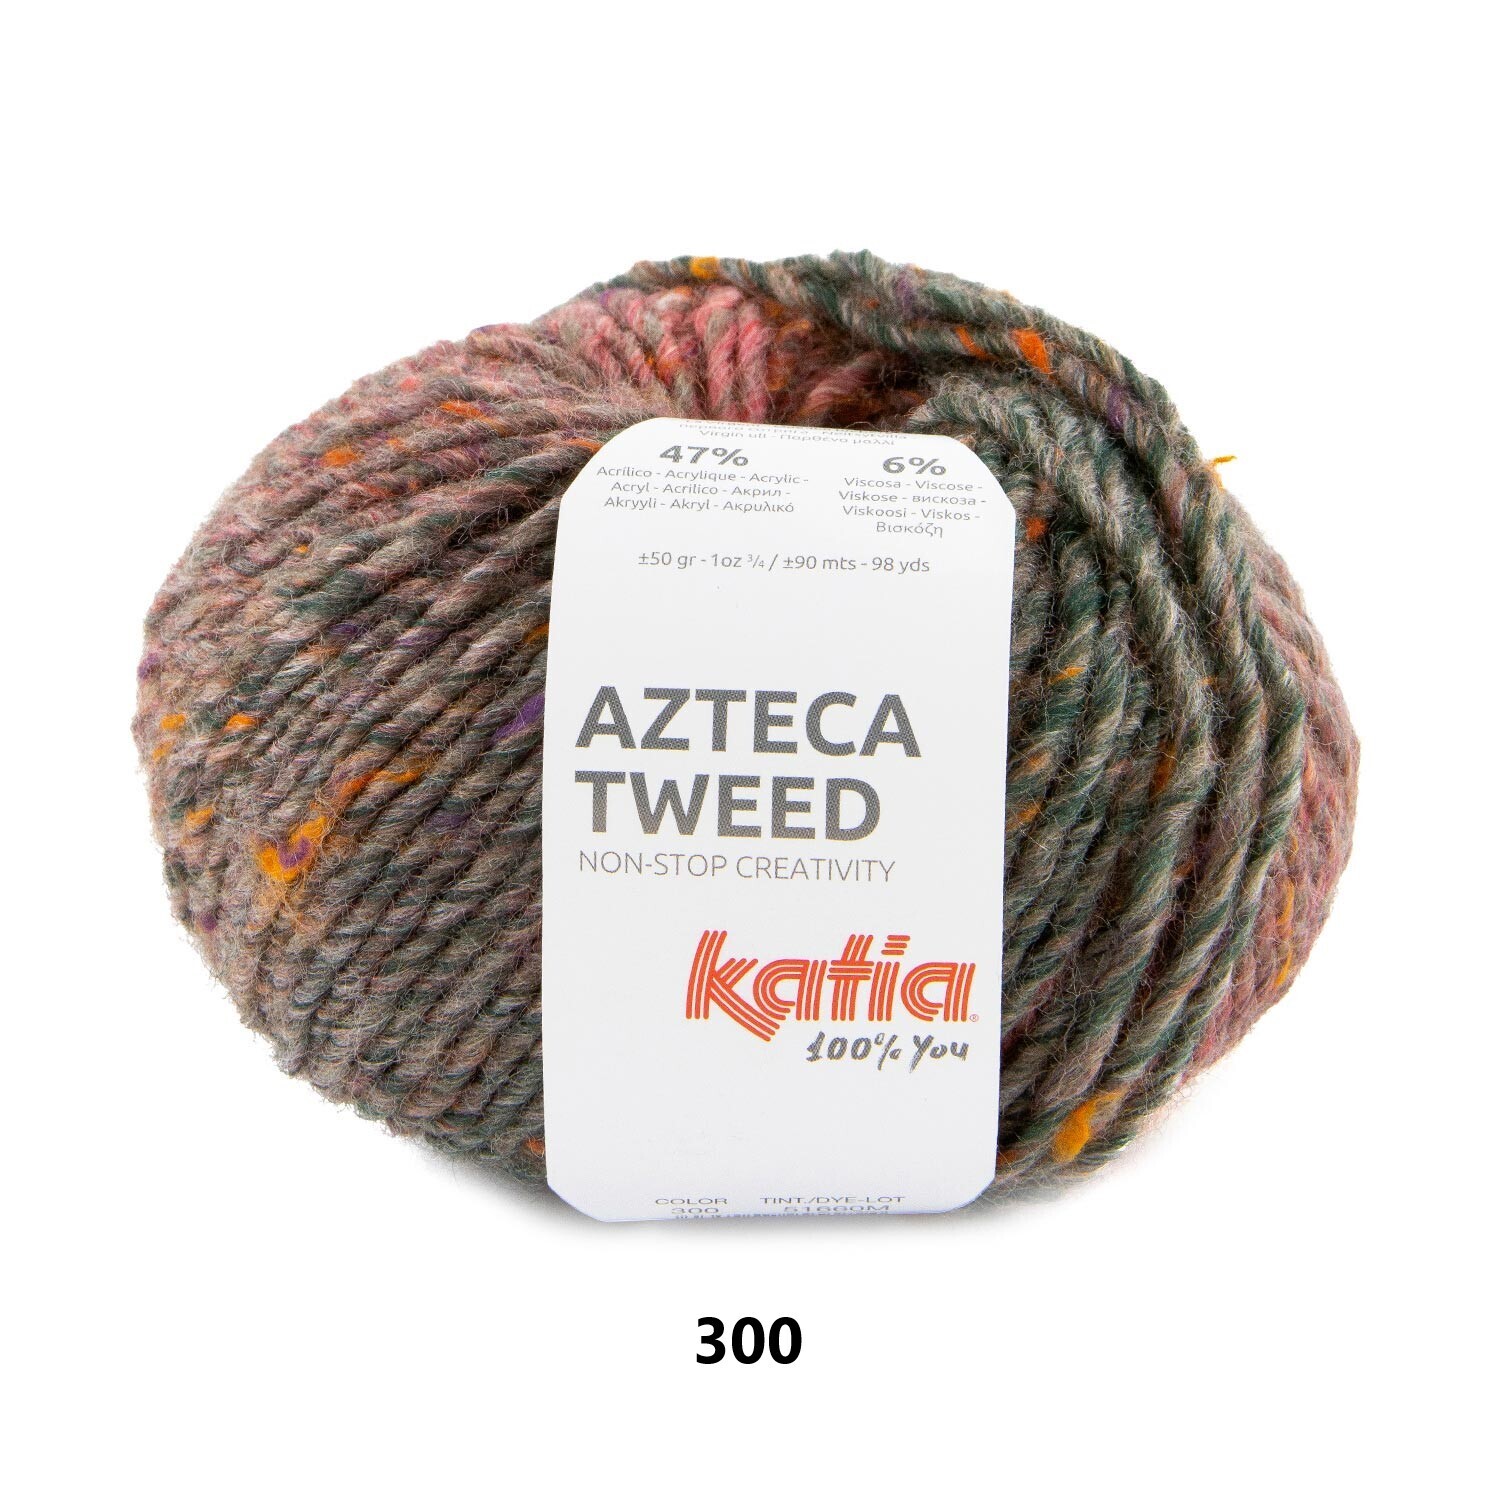 Azteca Tweed